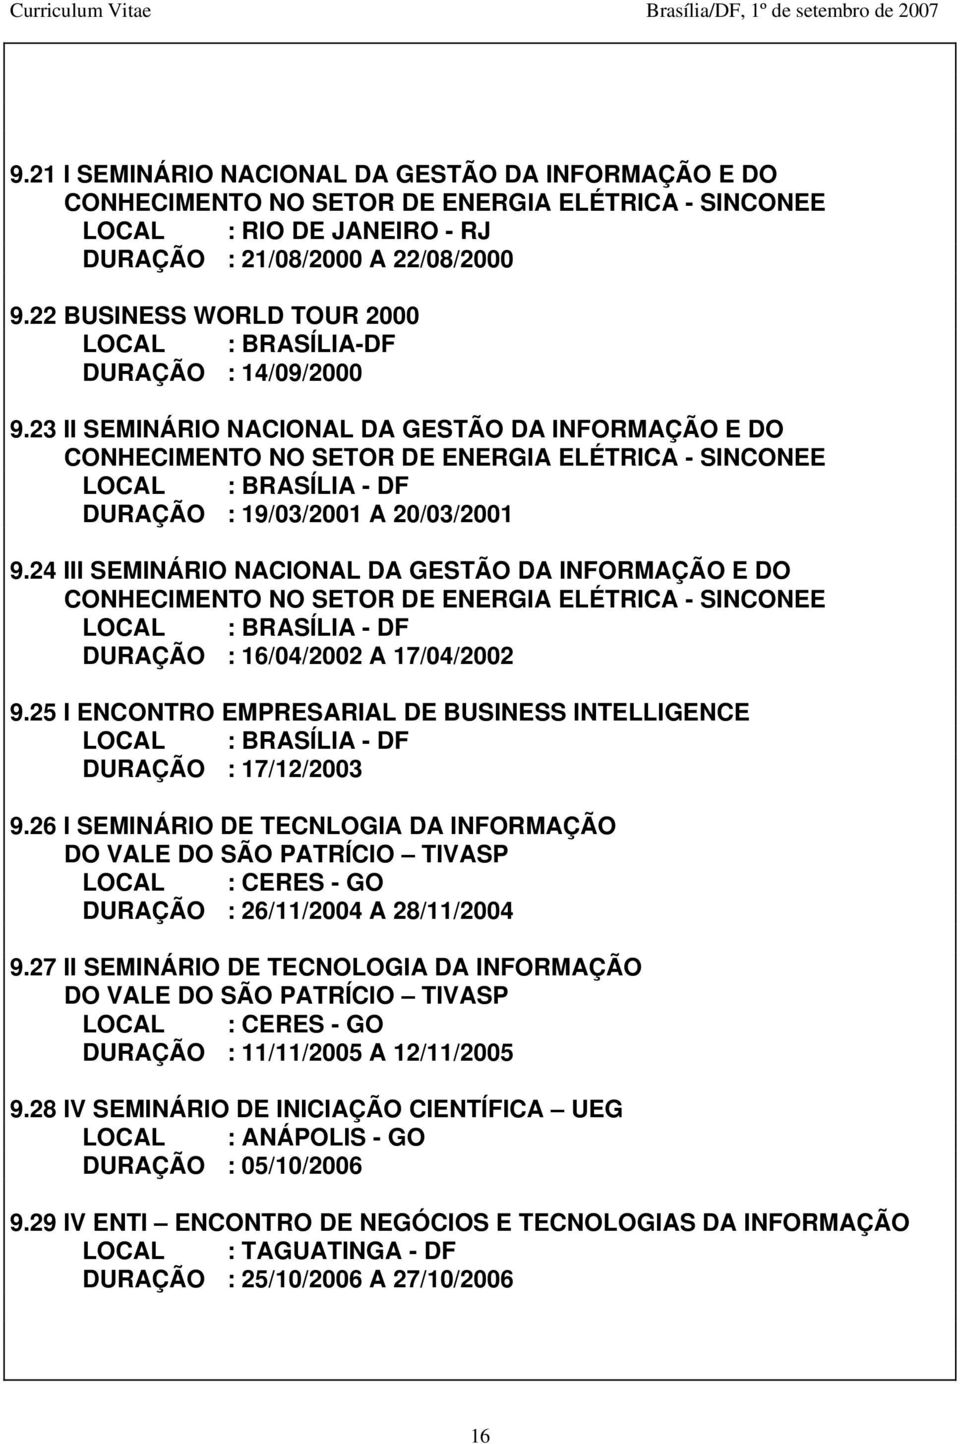 23 II SEMINÁRIO NACIONAL DA GESTÃO DA INFORMAÇÃO E DO CONHECIMENTO NO SETOR DE ENERGIA ELÉTRICA - SINCONEE LOCAL : BRASÍLIA - DF DURAÇÃO : 19/03/2001 A 20/03/2001 9.